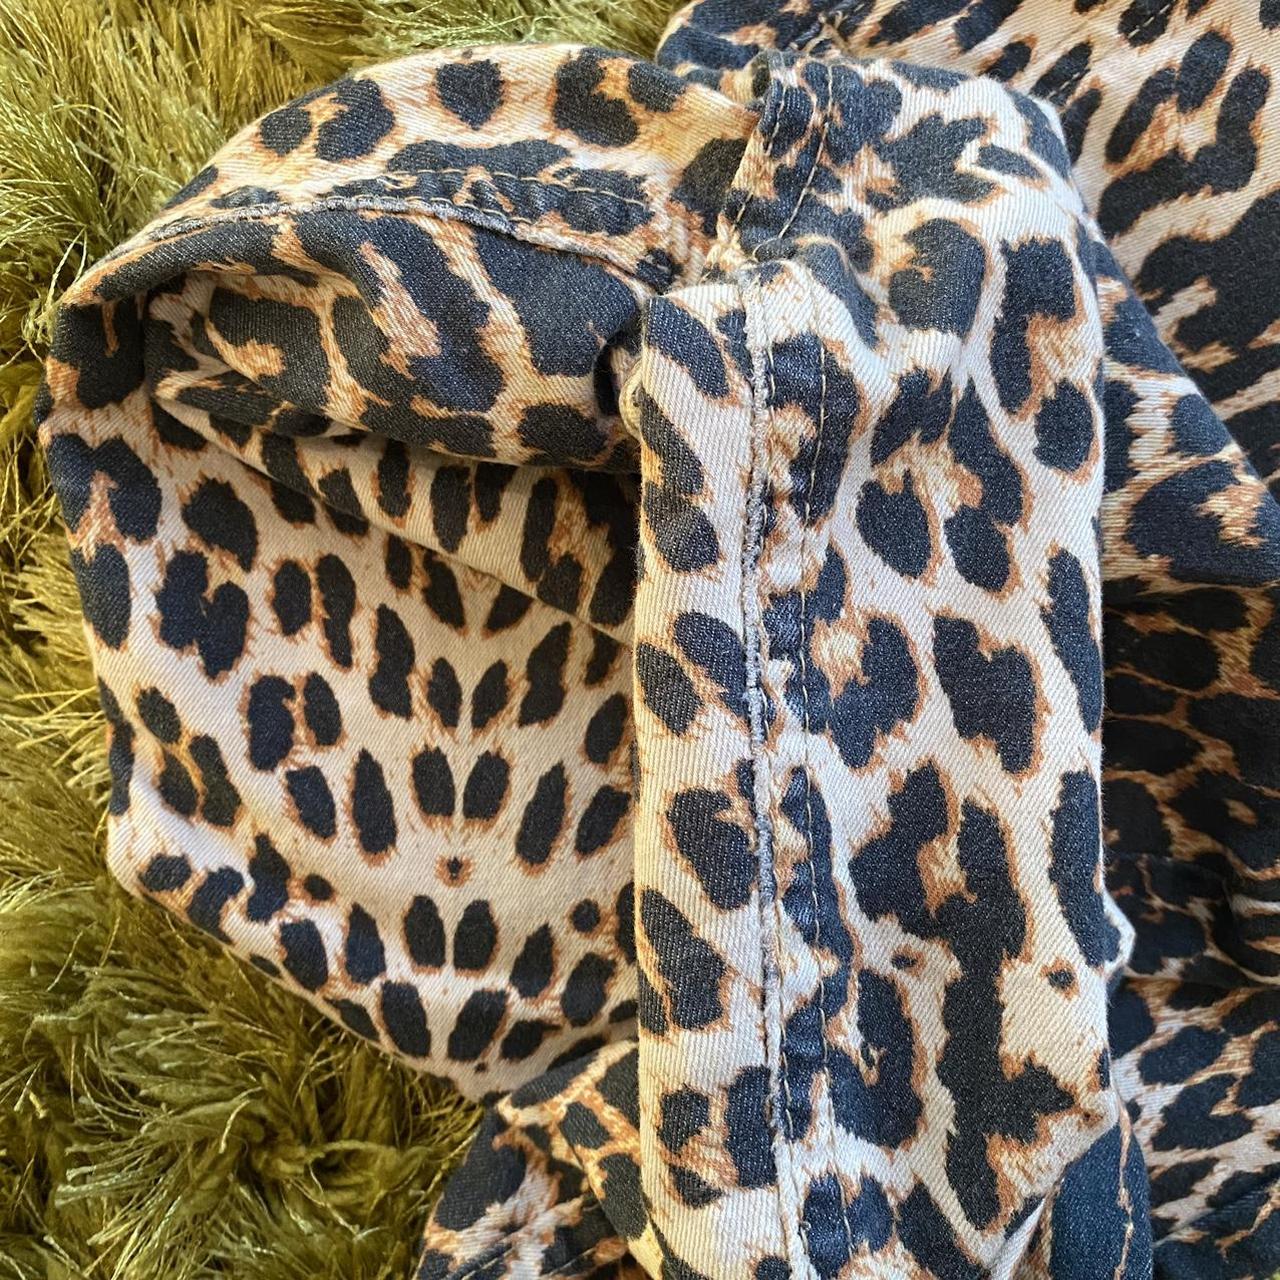 Calzedonia stretch leopard Jeggings in Medium Fit - Depop